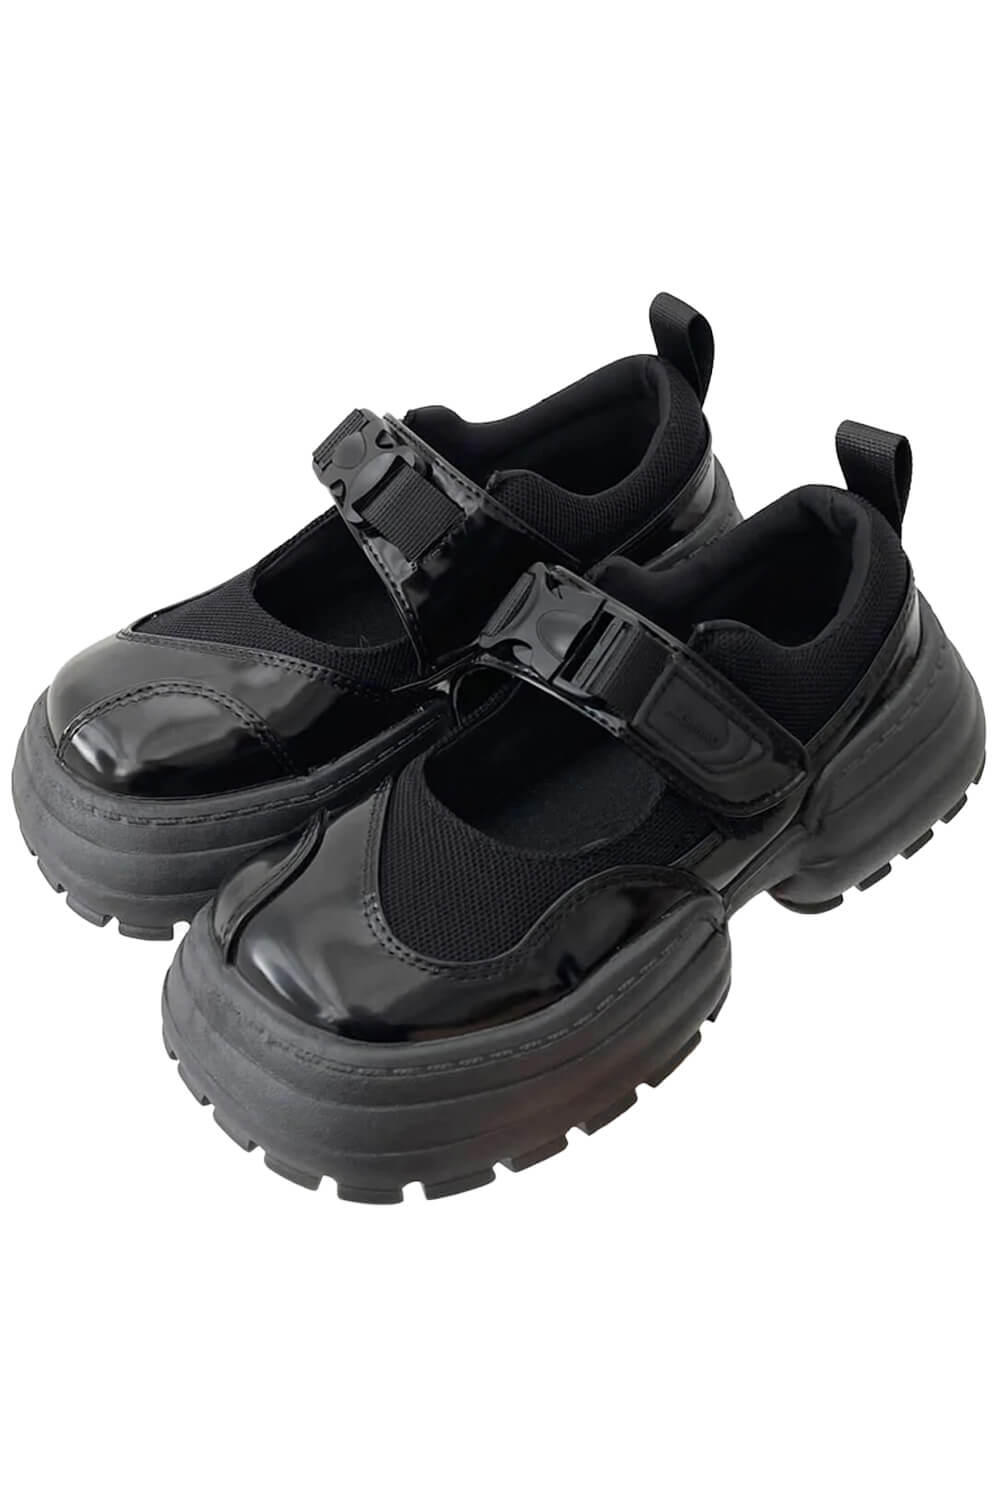 Black Y2K Platform Sandals Shoes Urbancore Aesthetic